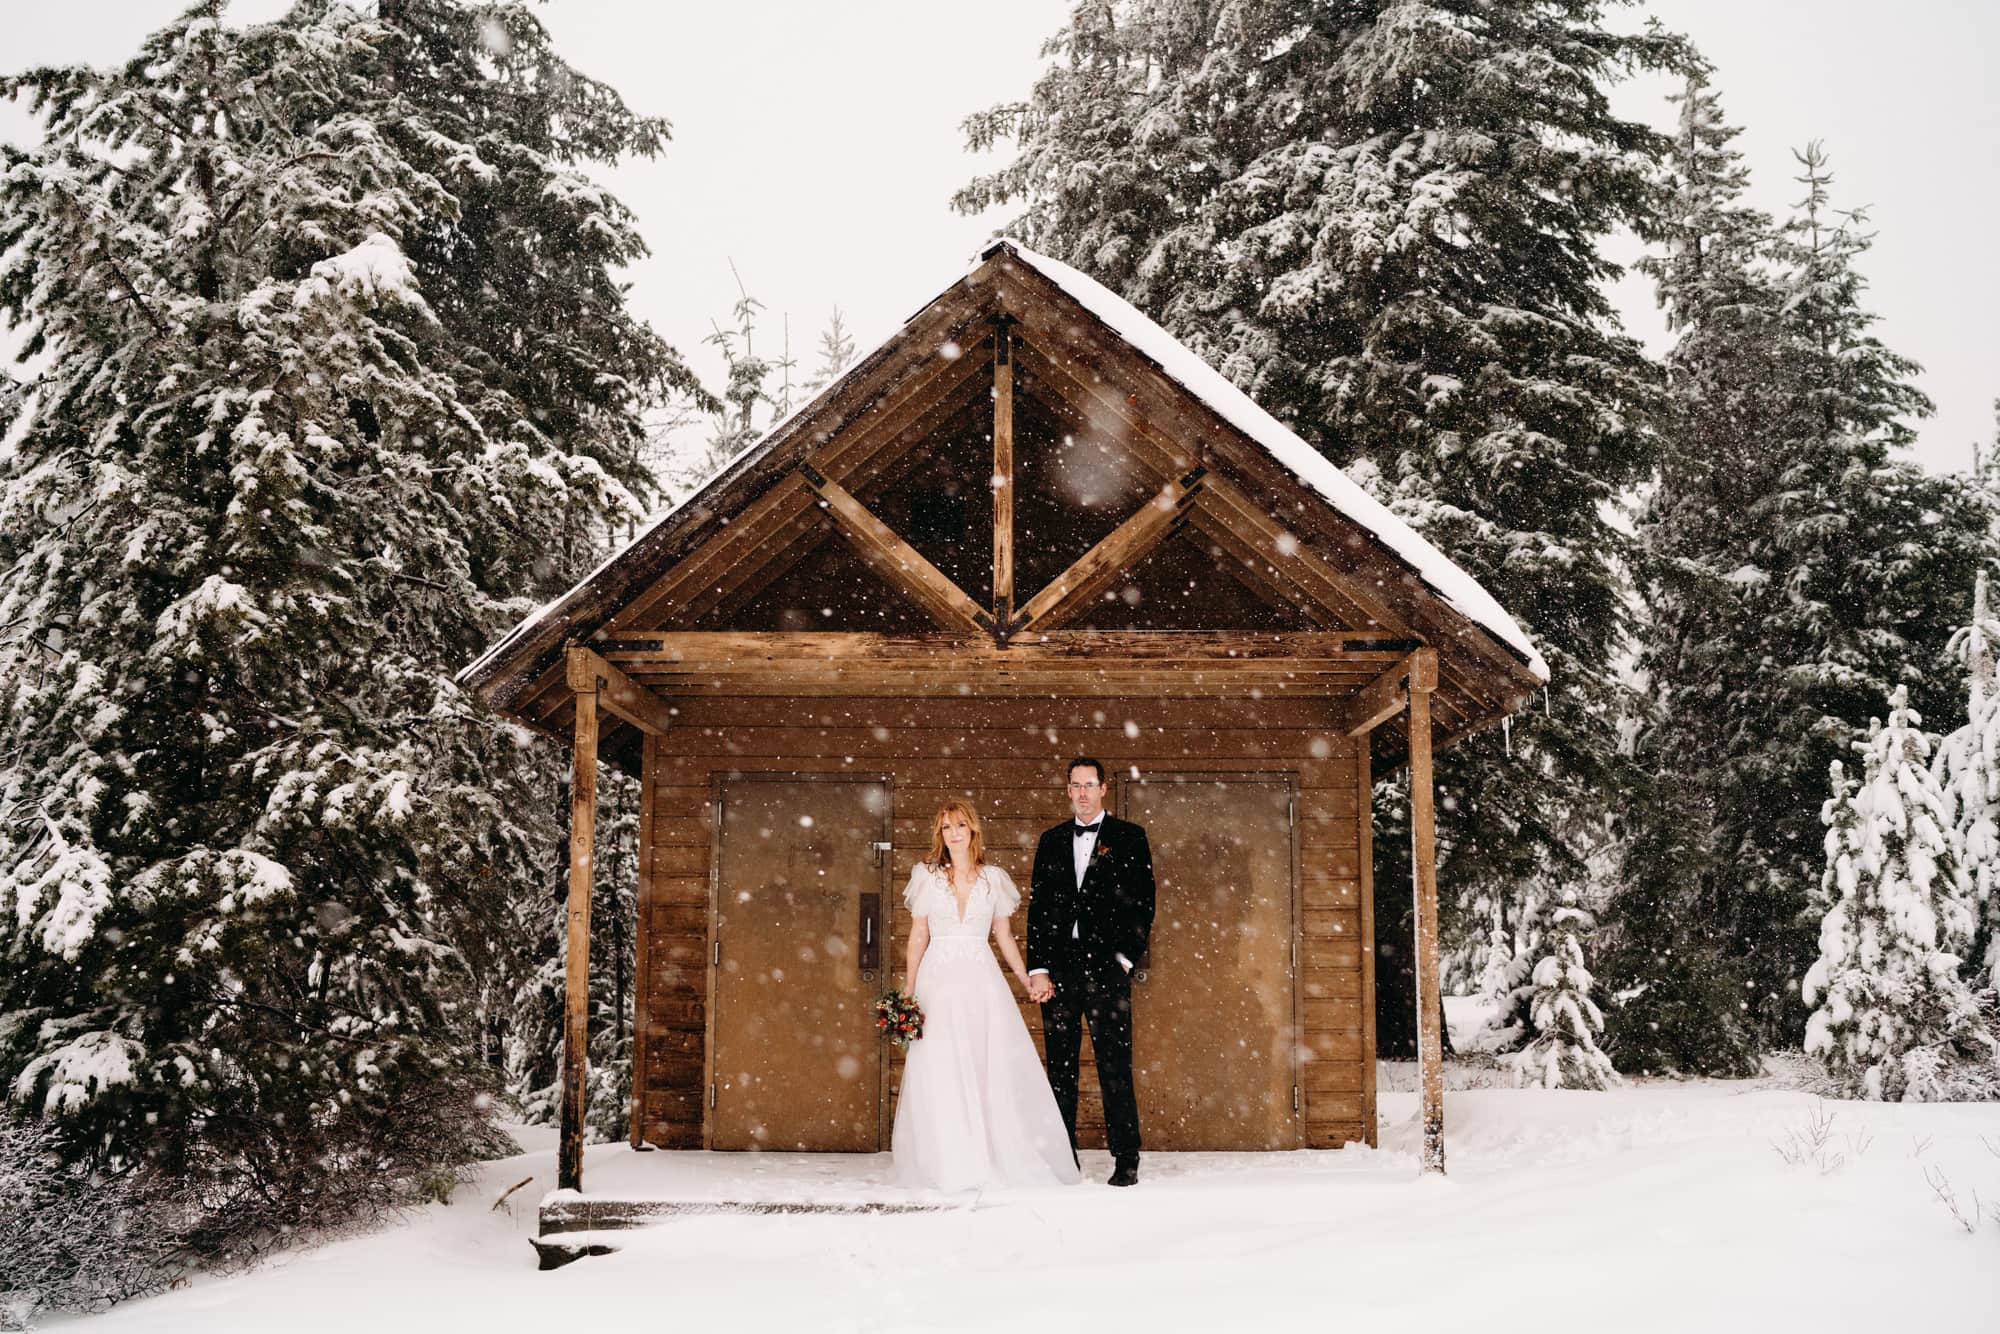  Bend  Oregon  Winter Wedding  Venues  Hollins Head Barn